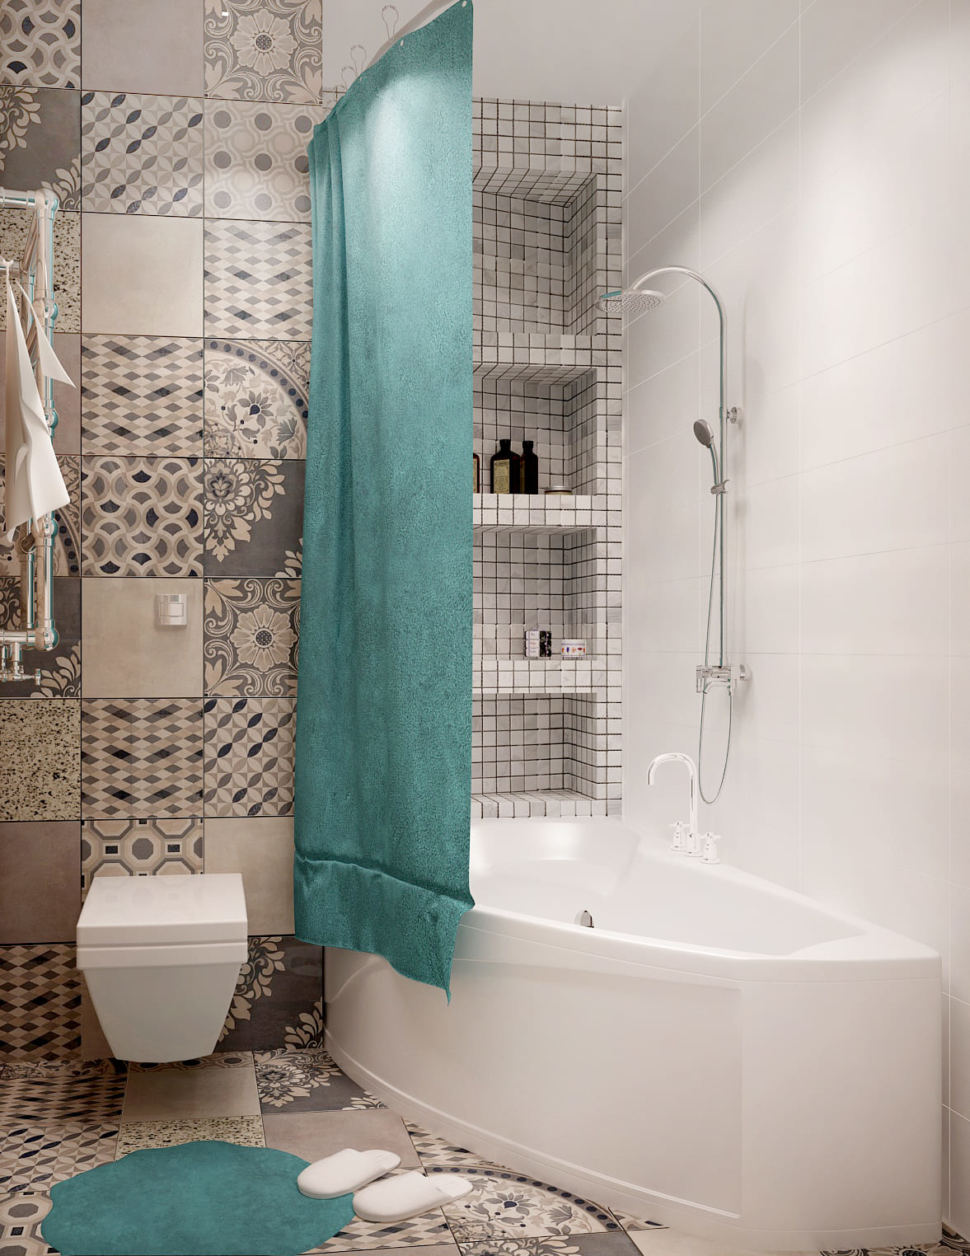 Визуализация совмещённый санузла с ванной 4 кв.м с белыми и серыми оттенками, ванная, зеркало, серая геометрическая плитка, унитаз, раковина 